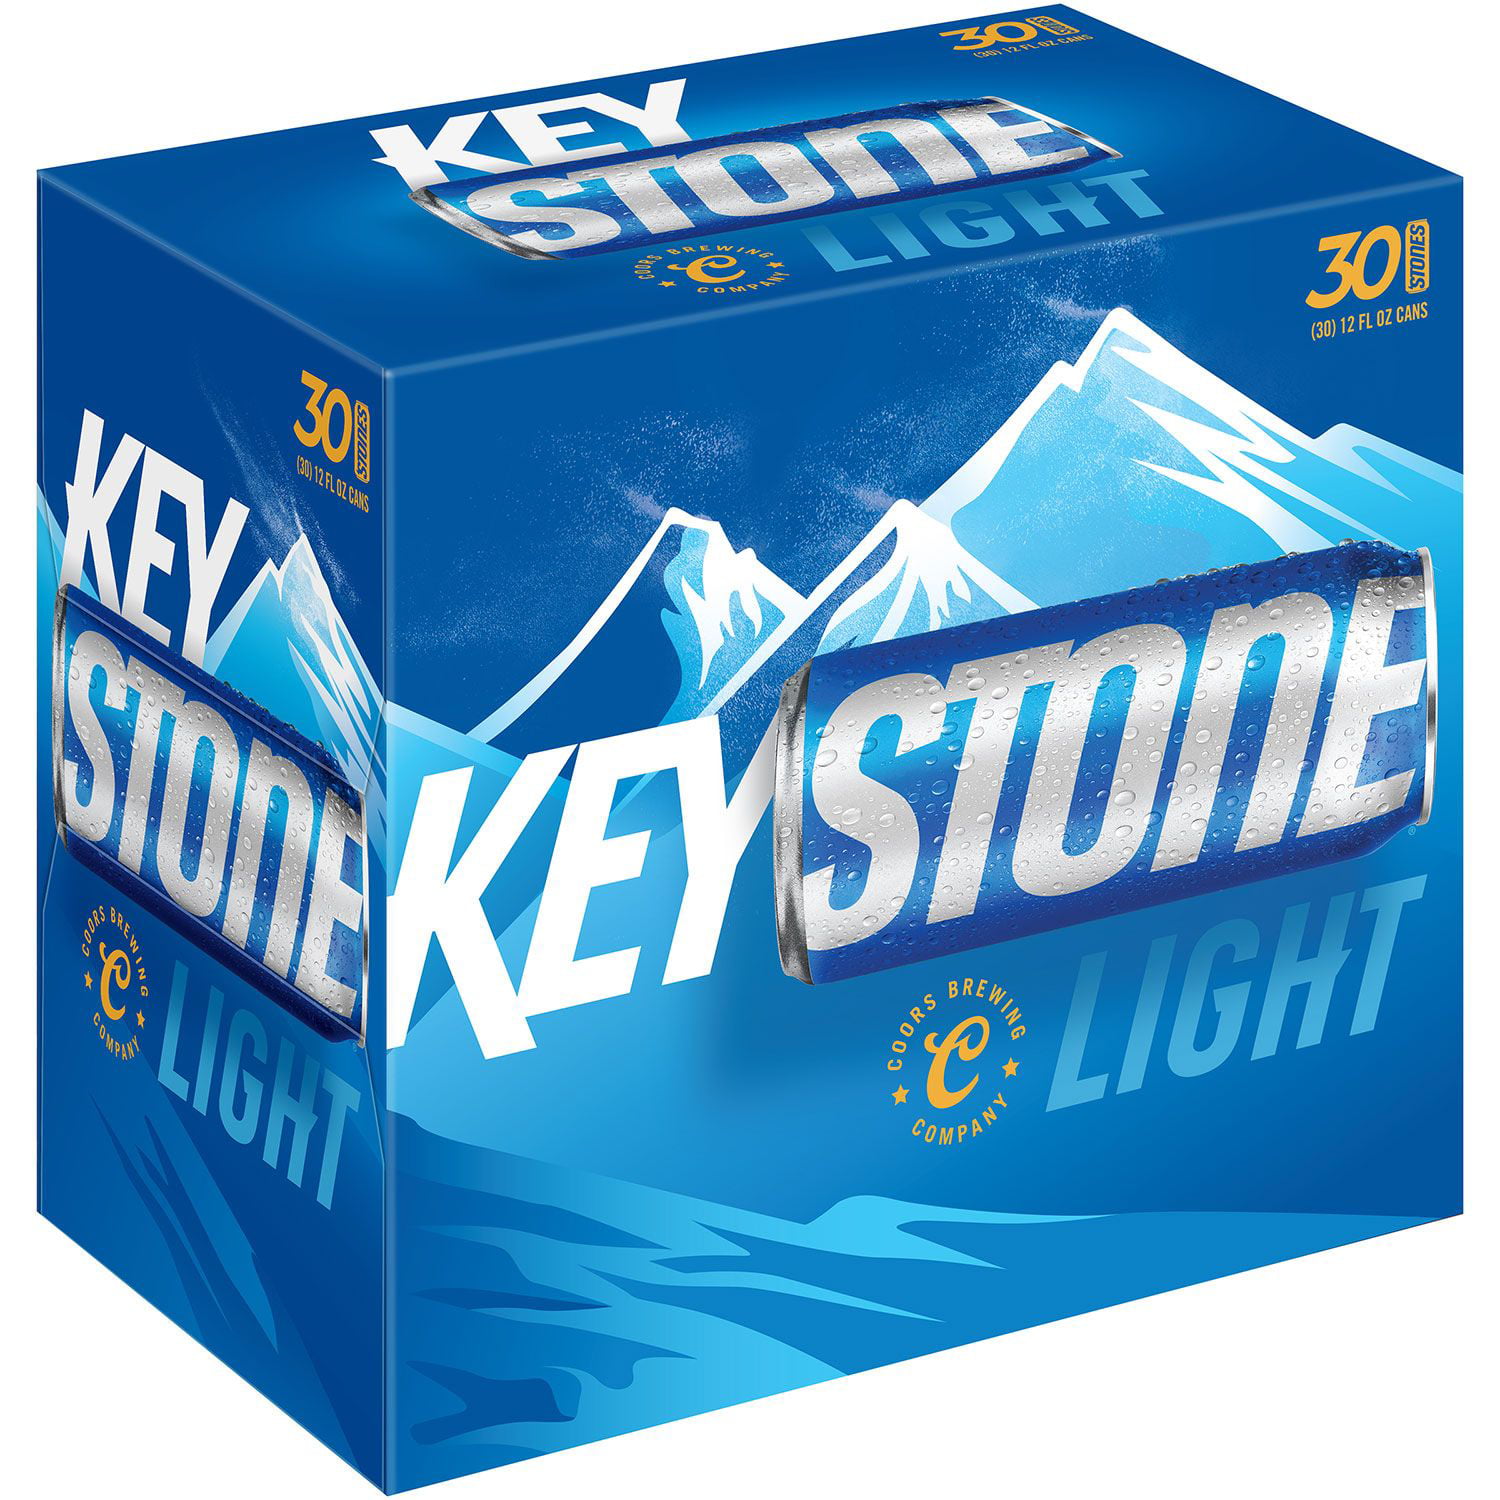 keystone-light-lager-beer-30-pack-12-fl-oz-cans-walmart